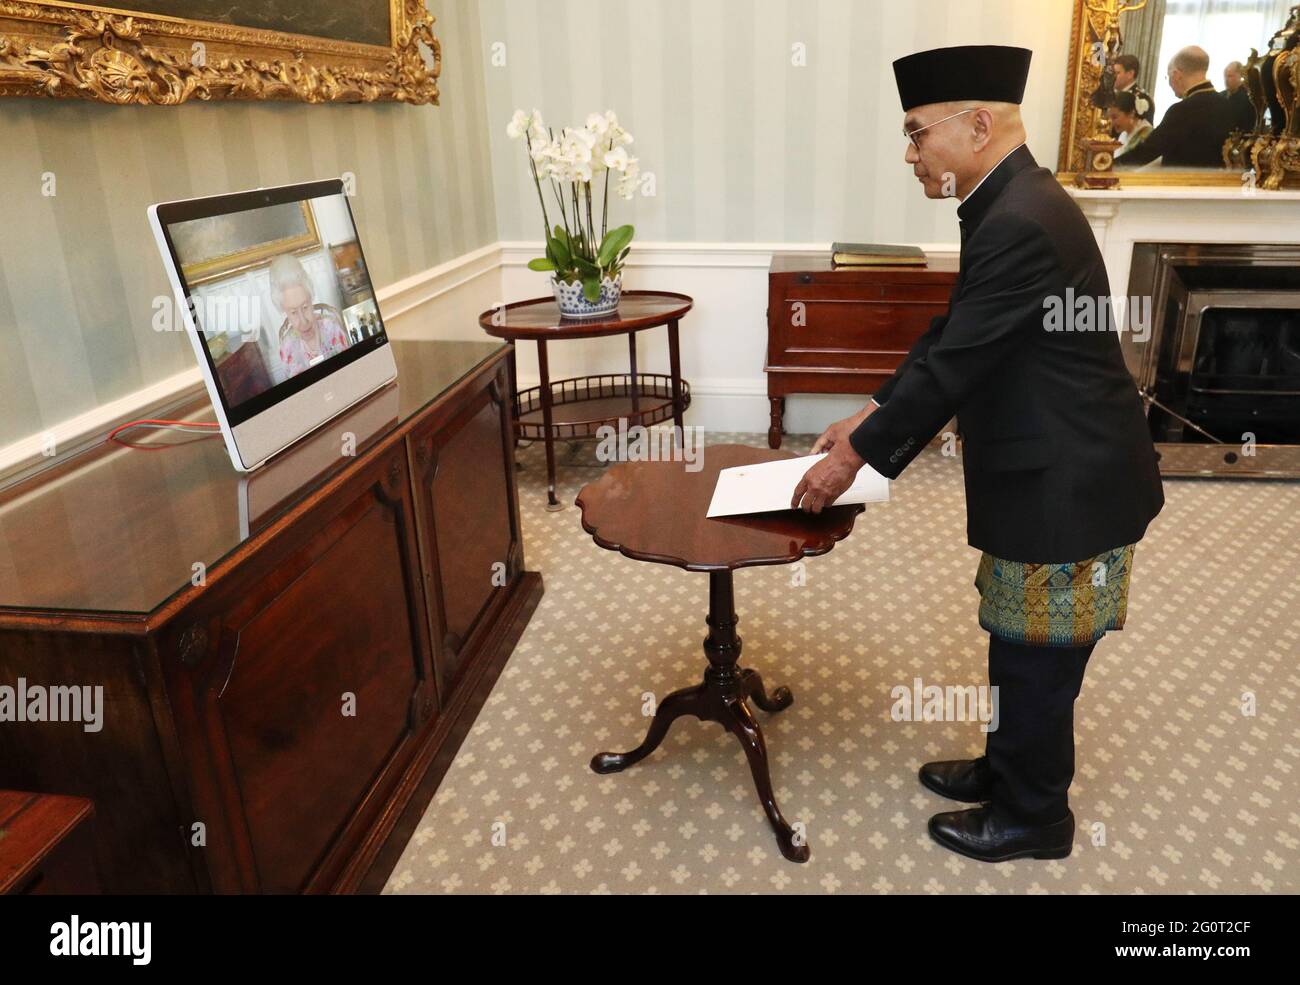 La reine Elizabeth II apparaît sur un écran par videolink du château de Windsor, où elle est en résidence, lors d'un public virtuel pour recevoir Desra Percaya, ambassadrice de la République d'Indonésie, à Buckingham Palace, Londres. Date de la photo: Jeudi 3 juin 2021. Banque D'Images